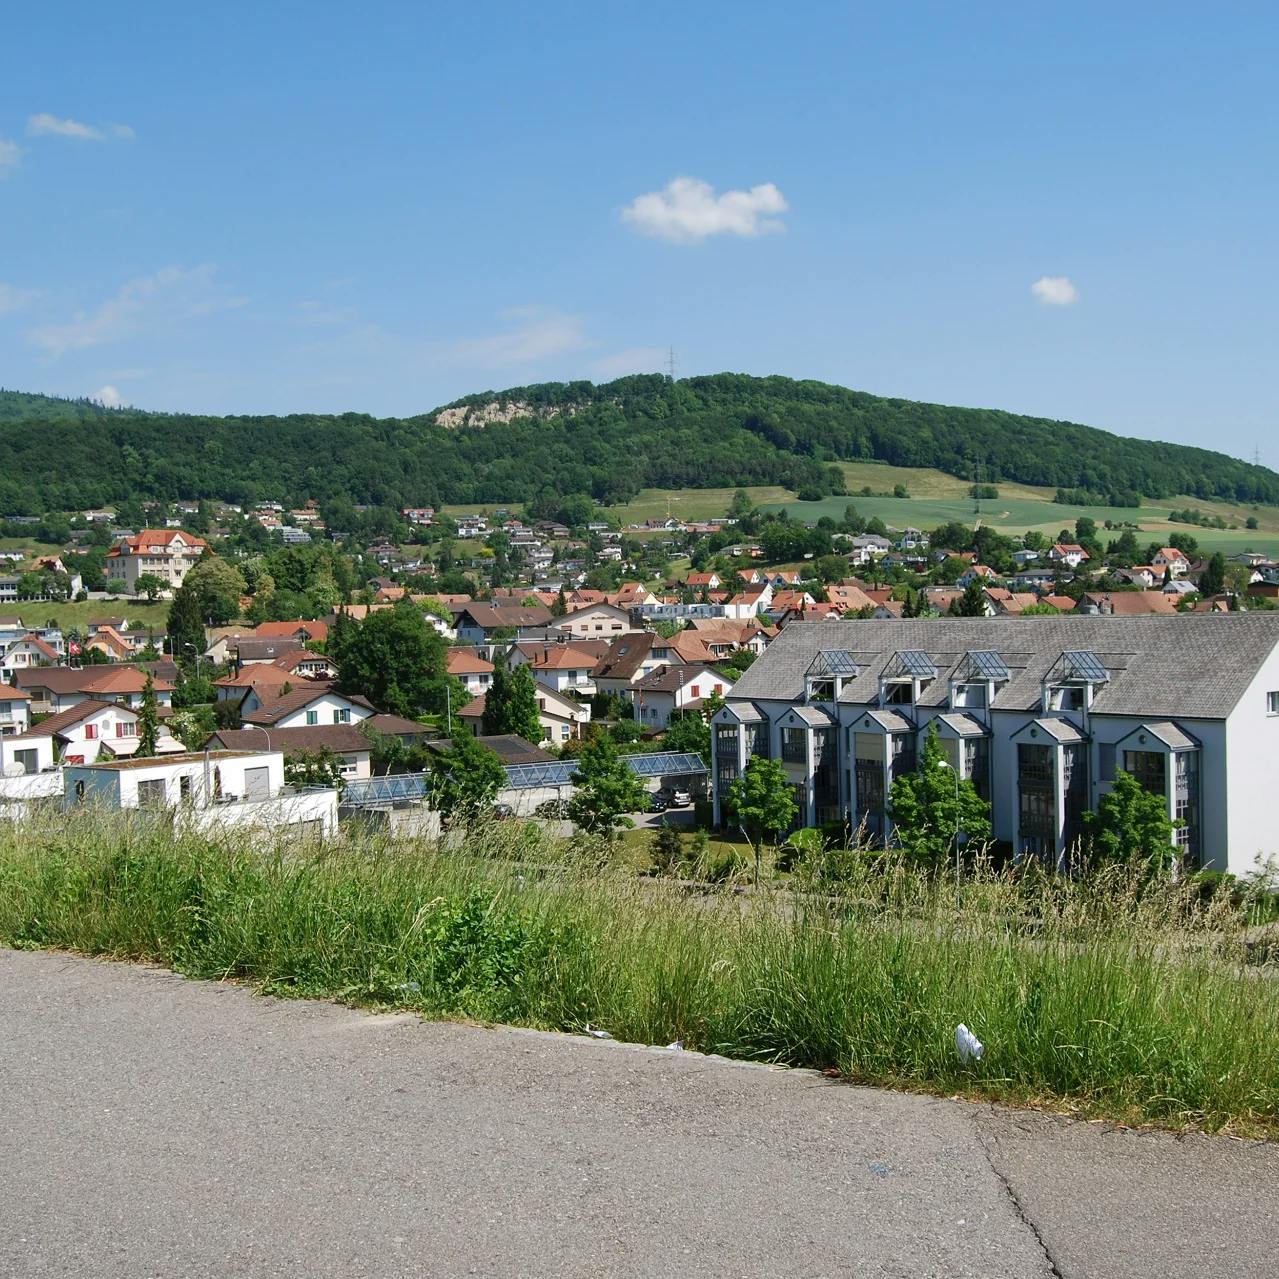 Blick auf die Ortschaft Lostorf und die Hügel dahinter, von einem erhöhten Punkt ausserhalb des Dorfes.